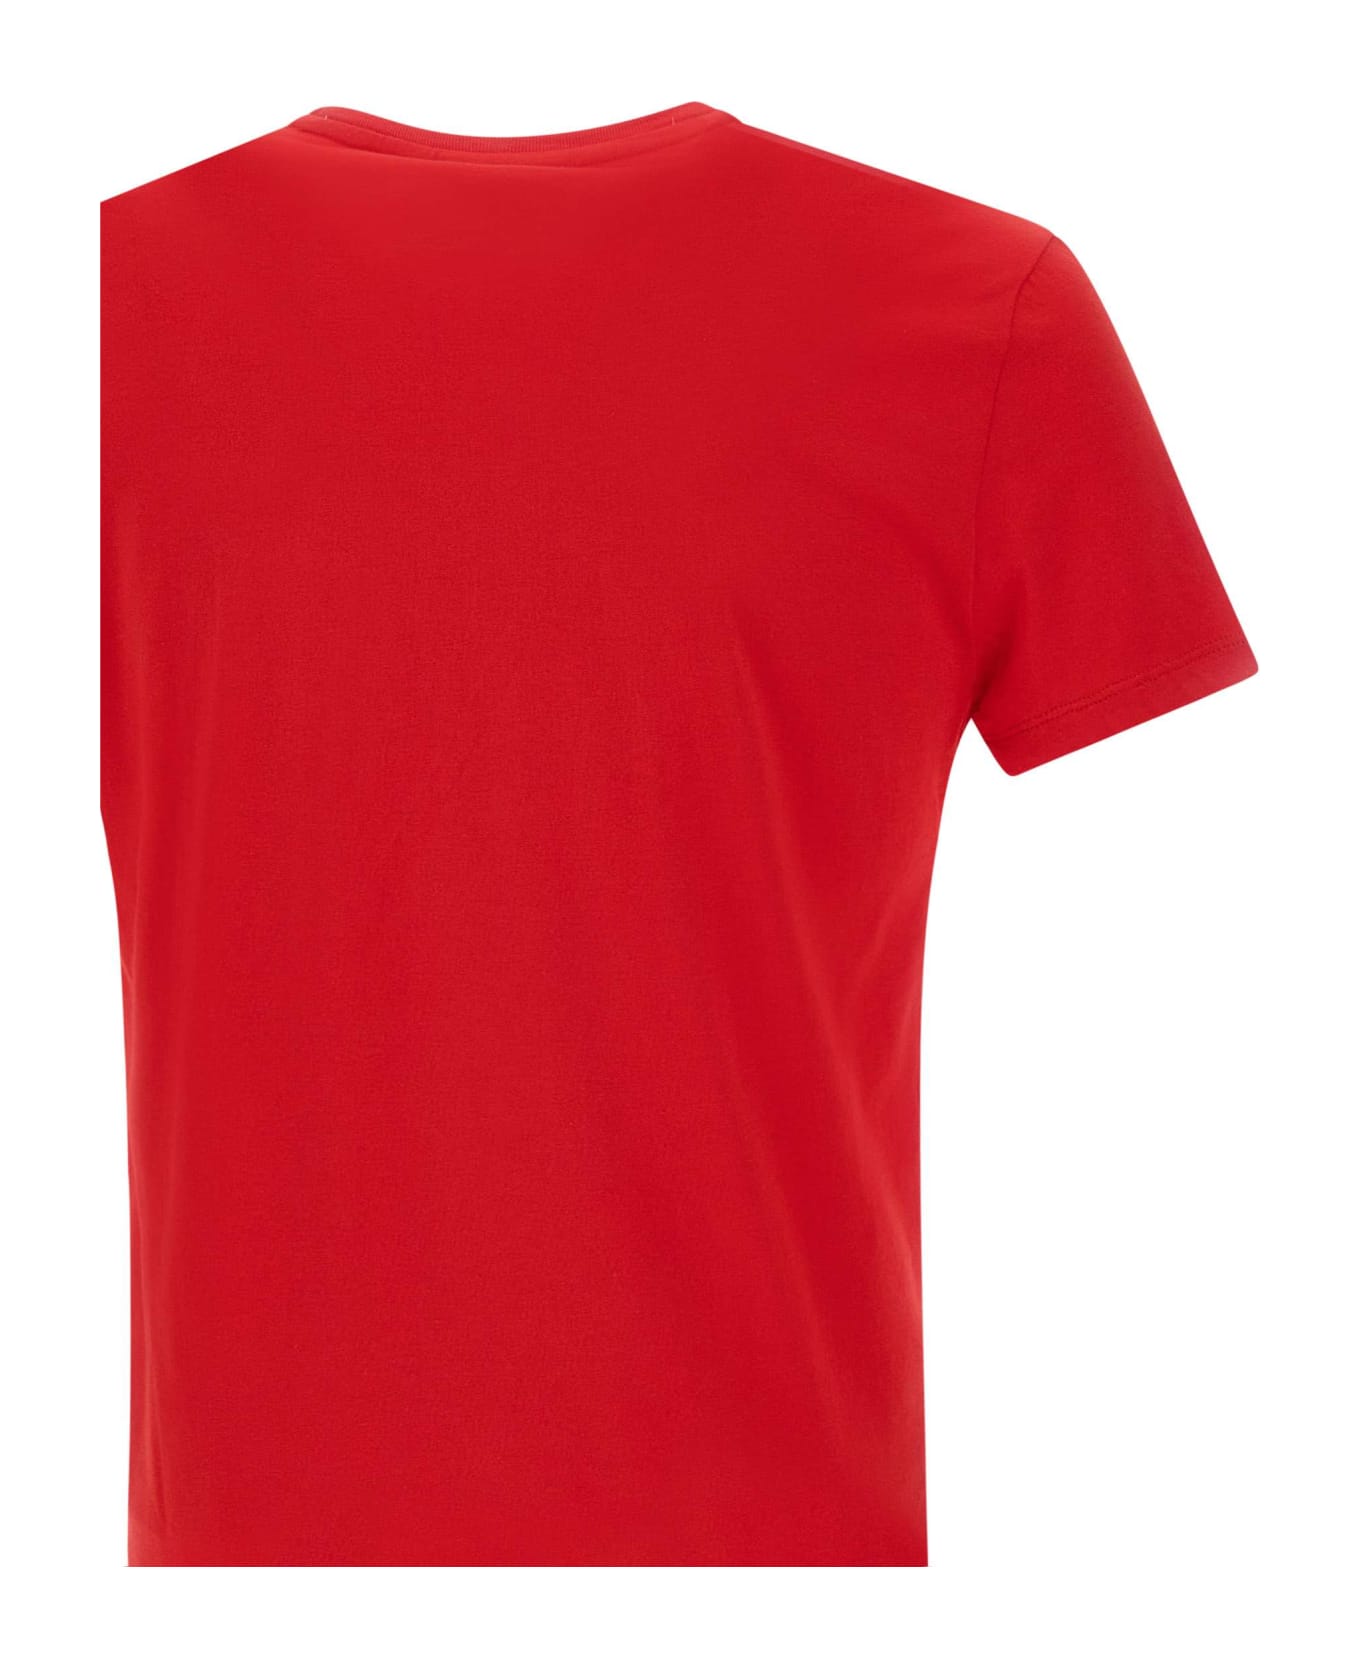 Lacoste Pima Cotton T-shirt - Rosso シャツ